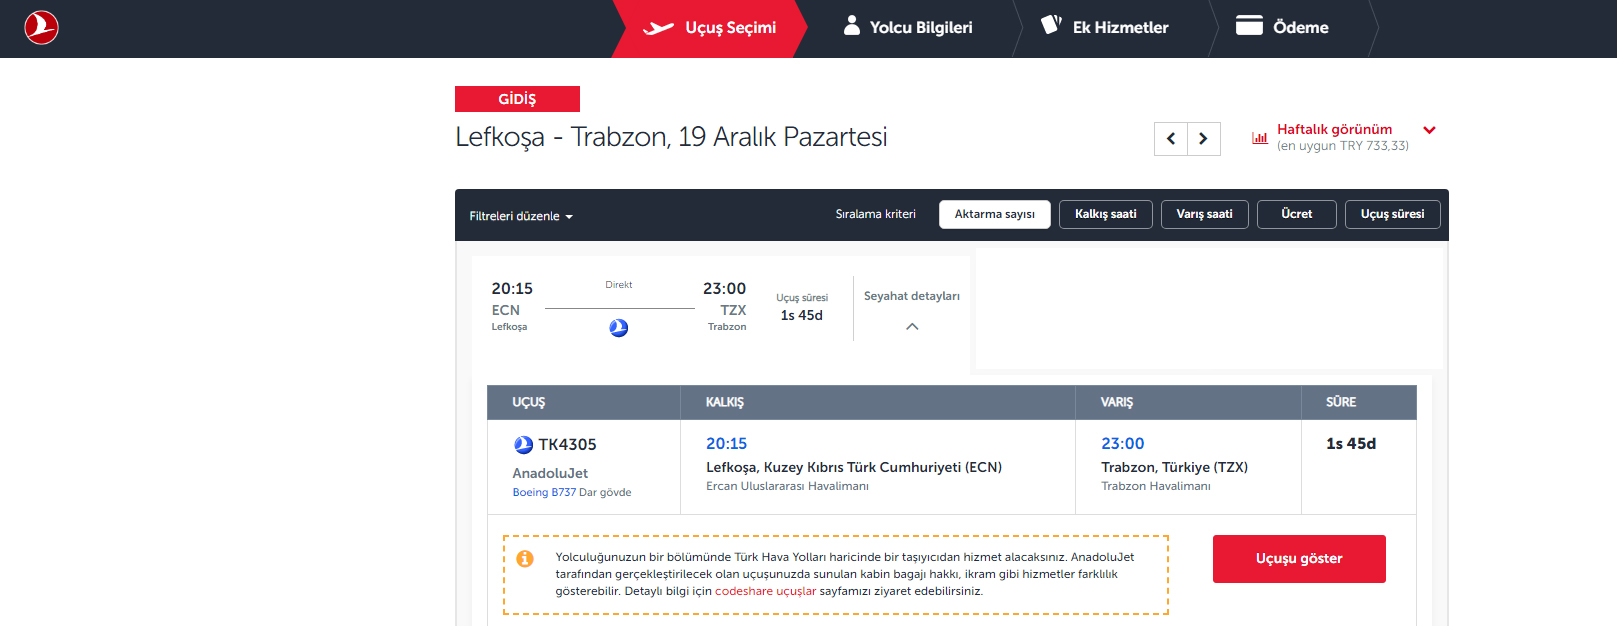 Trabzon Kıbrıs direkt uçak seferlerinin detayları belli oldu